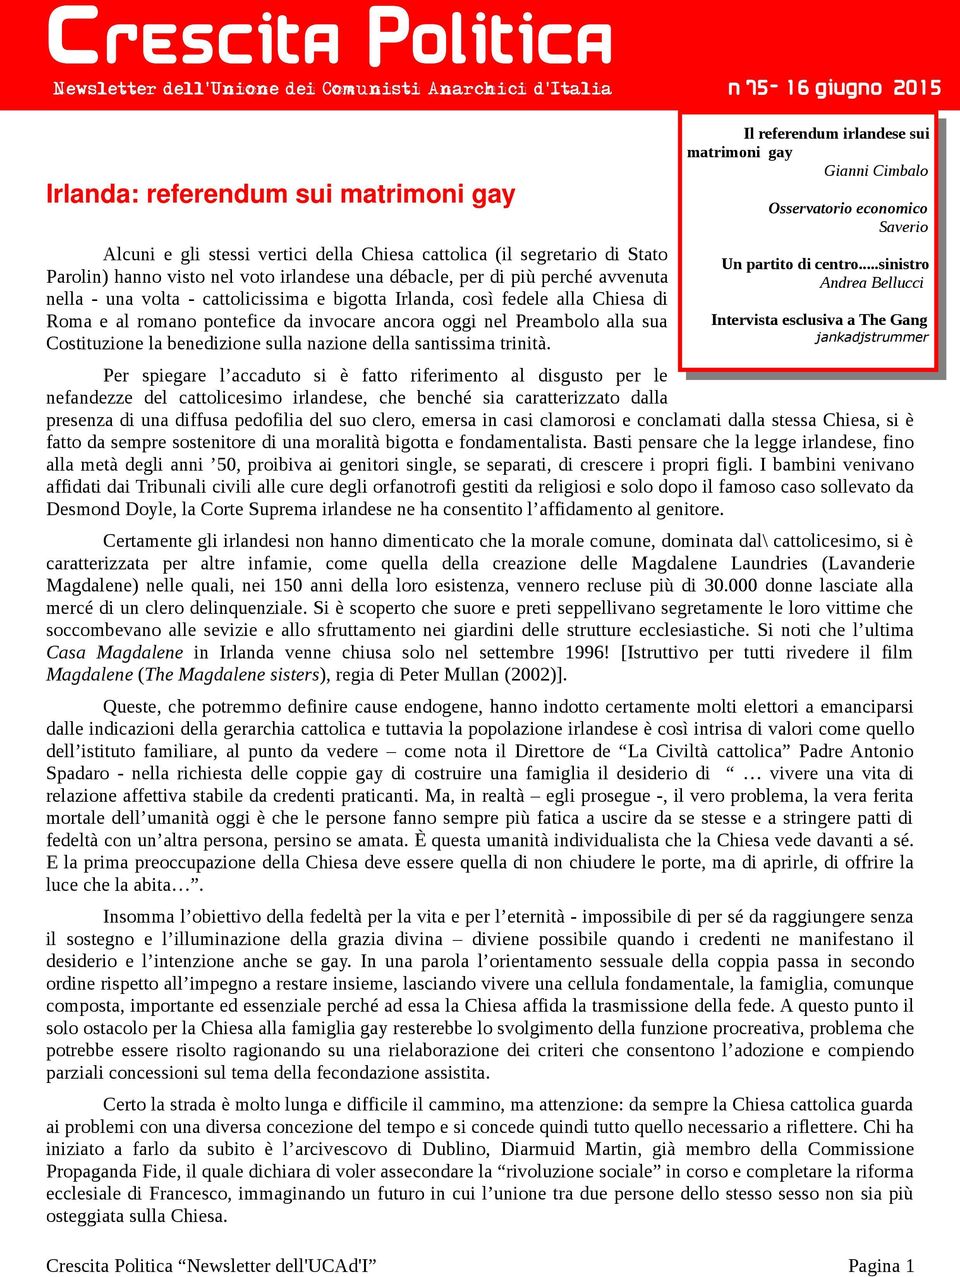 santissima trinità. N 75-16 giugno 2015 Il referendum irlandese sui matrimoni gay Gianni Cimbalo Osservatorio economico Saverio Un partito di centro.